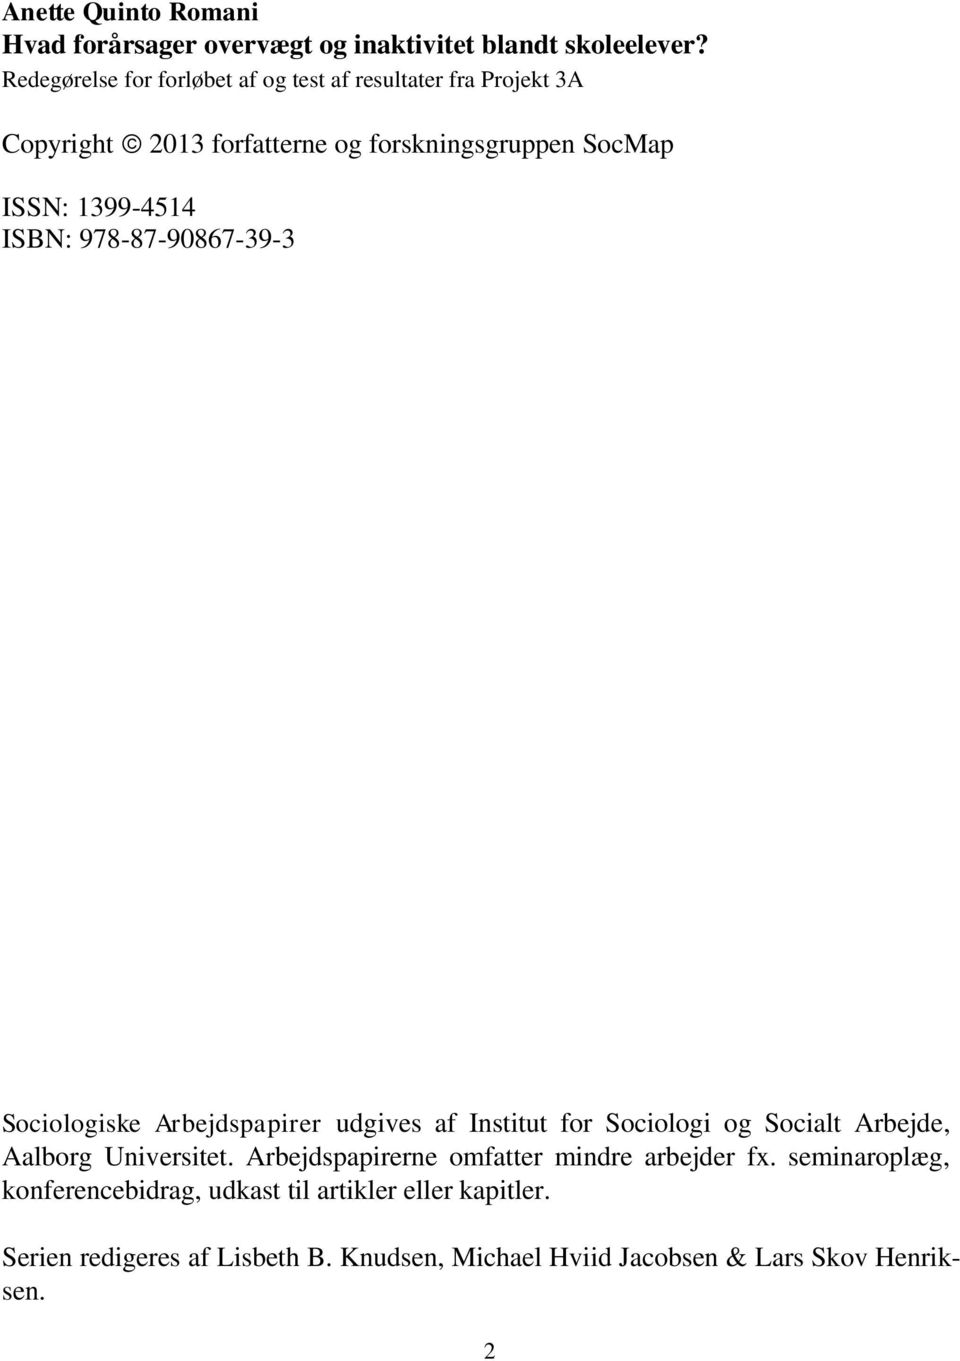 ISBN: 978-87-90867-39-3 Sociologiske Arbejdspapirer udgives af Institut for Sociologi og Socialt Arbejde, Aalborg Universitet.